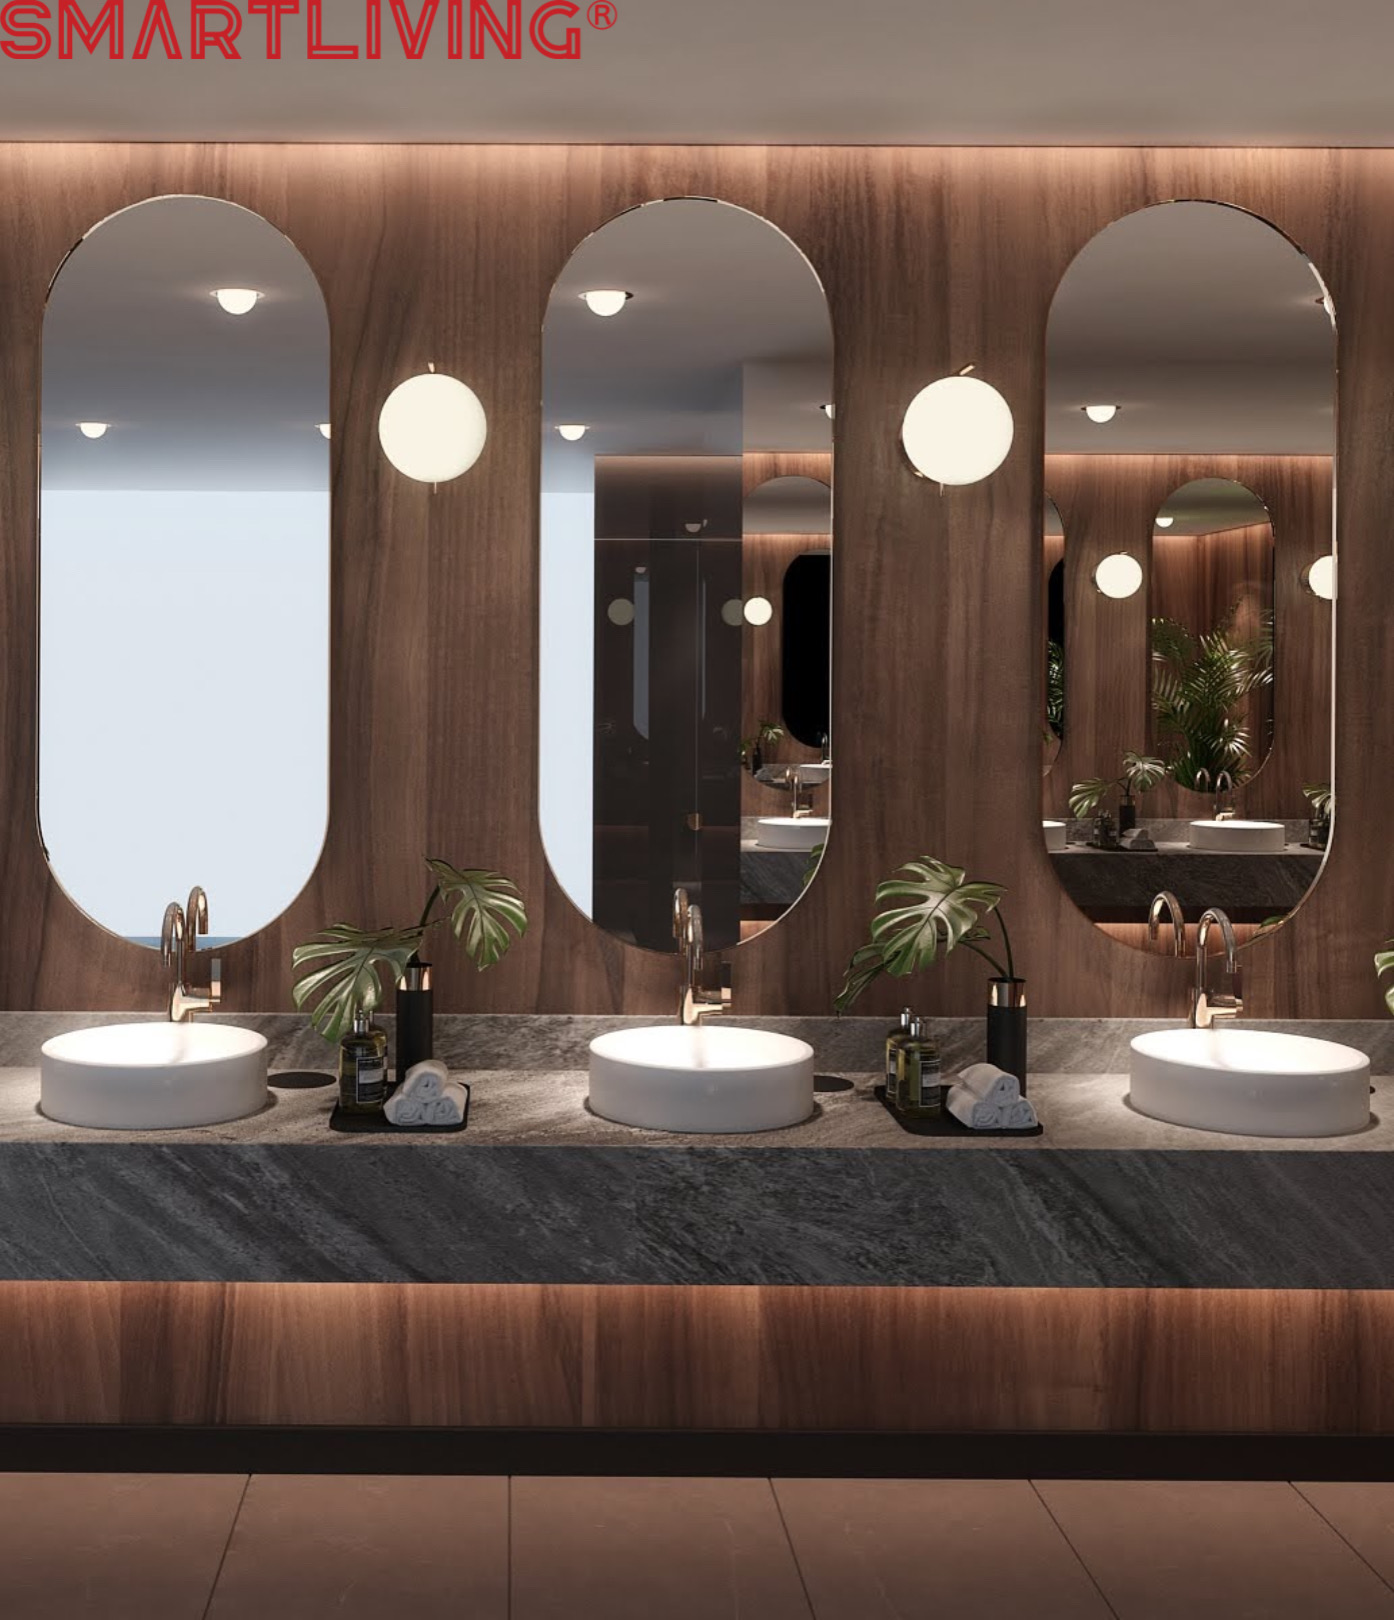 Thiết kế nhà vệ sinh cho nhà hàng, khách sạn